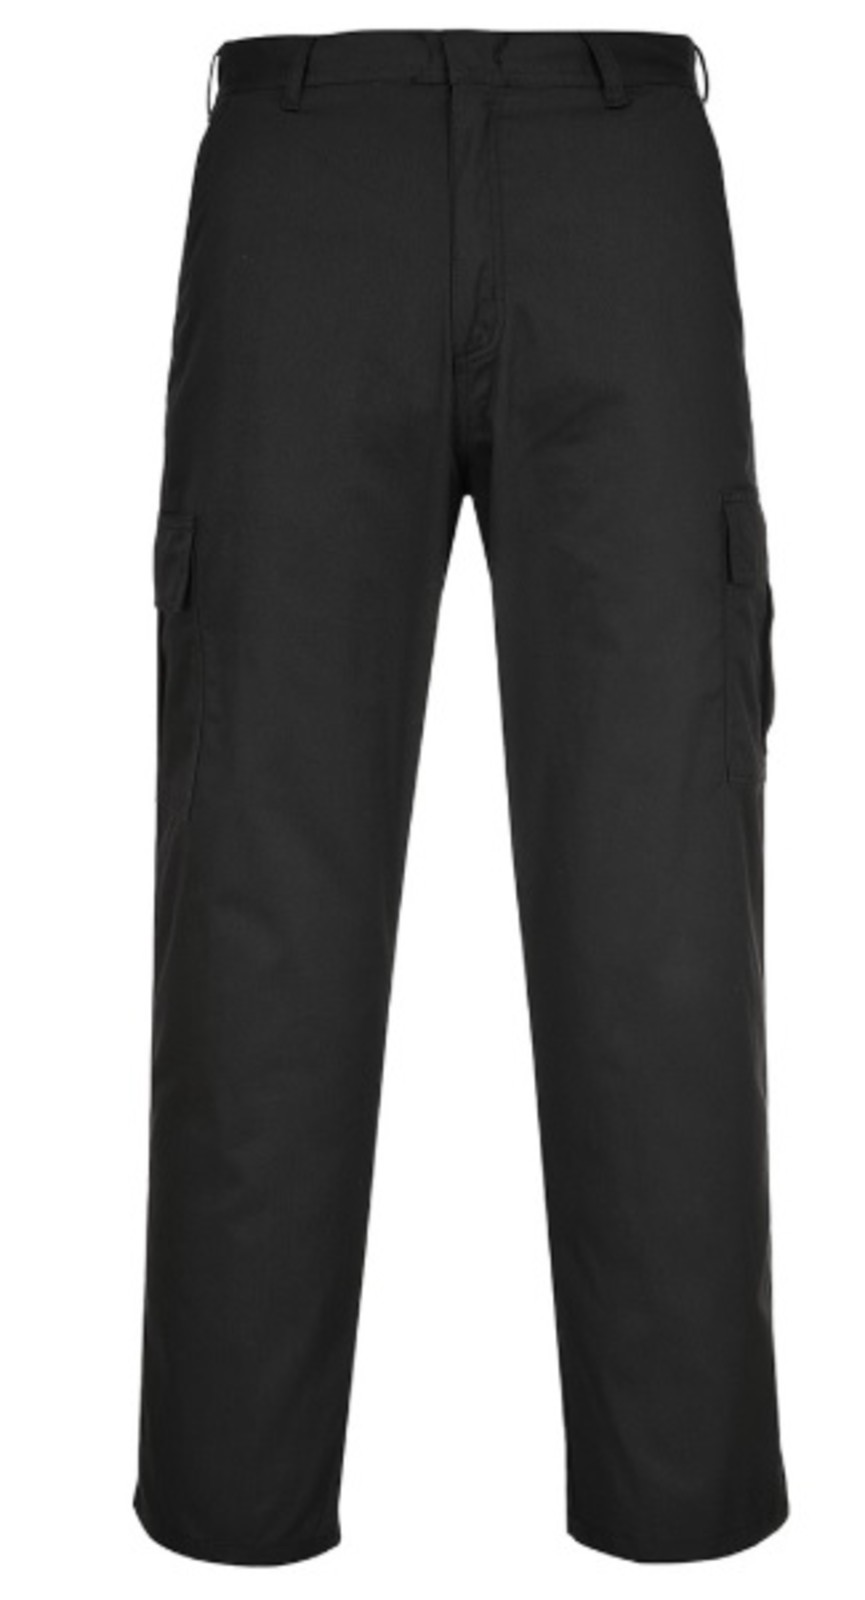 Pracovné nohavice Portwest Combat C701 - veľkosť: 50, farba: čierna